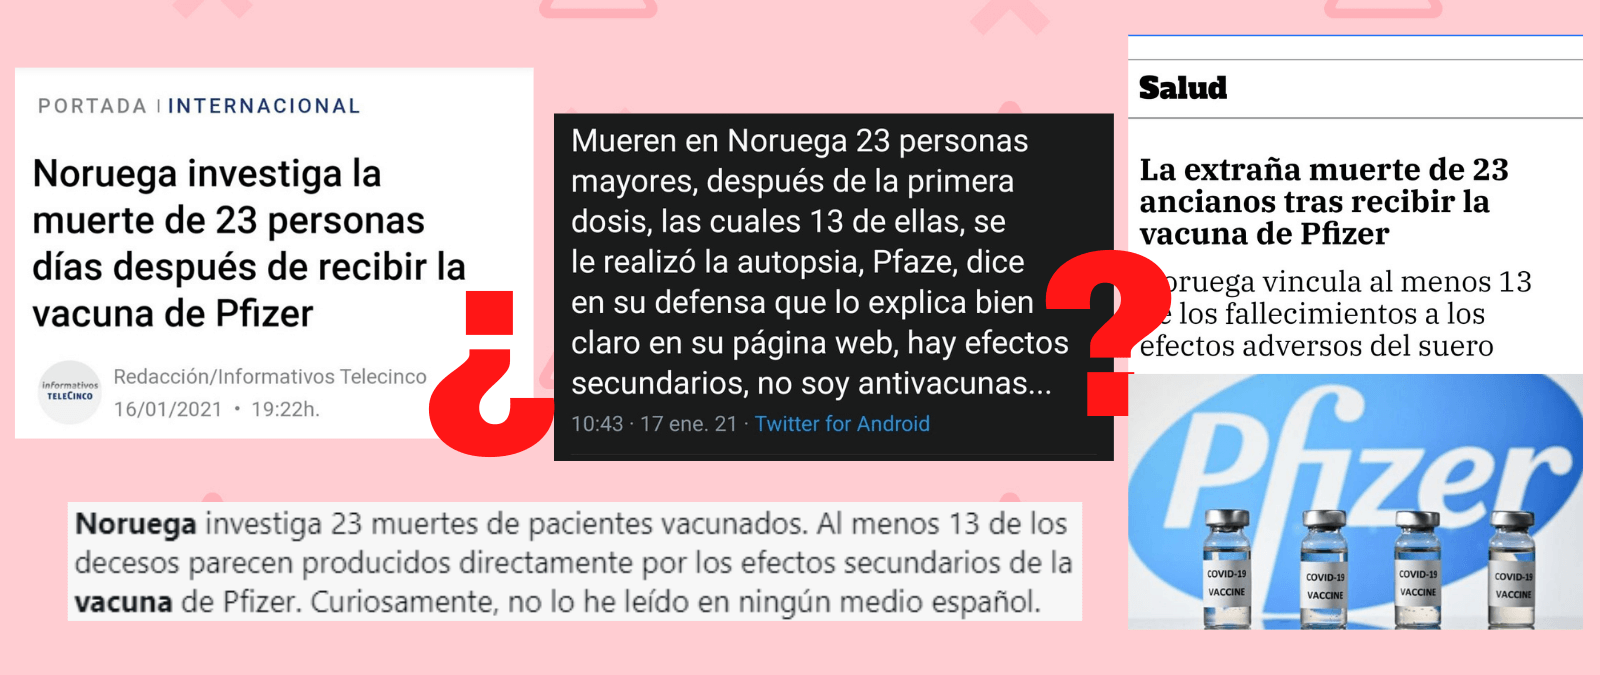 https://maldita.es/uploads/public/Portada%20Noruega%20Fallecidos.png